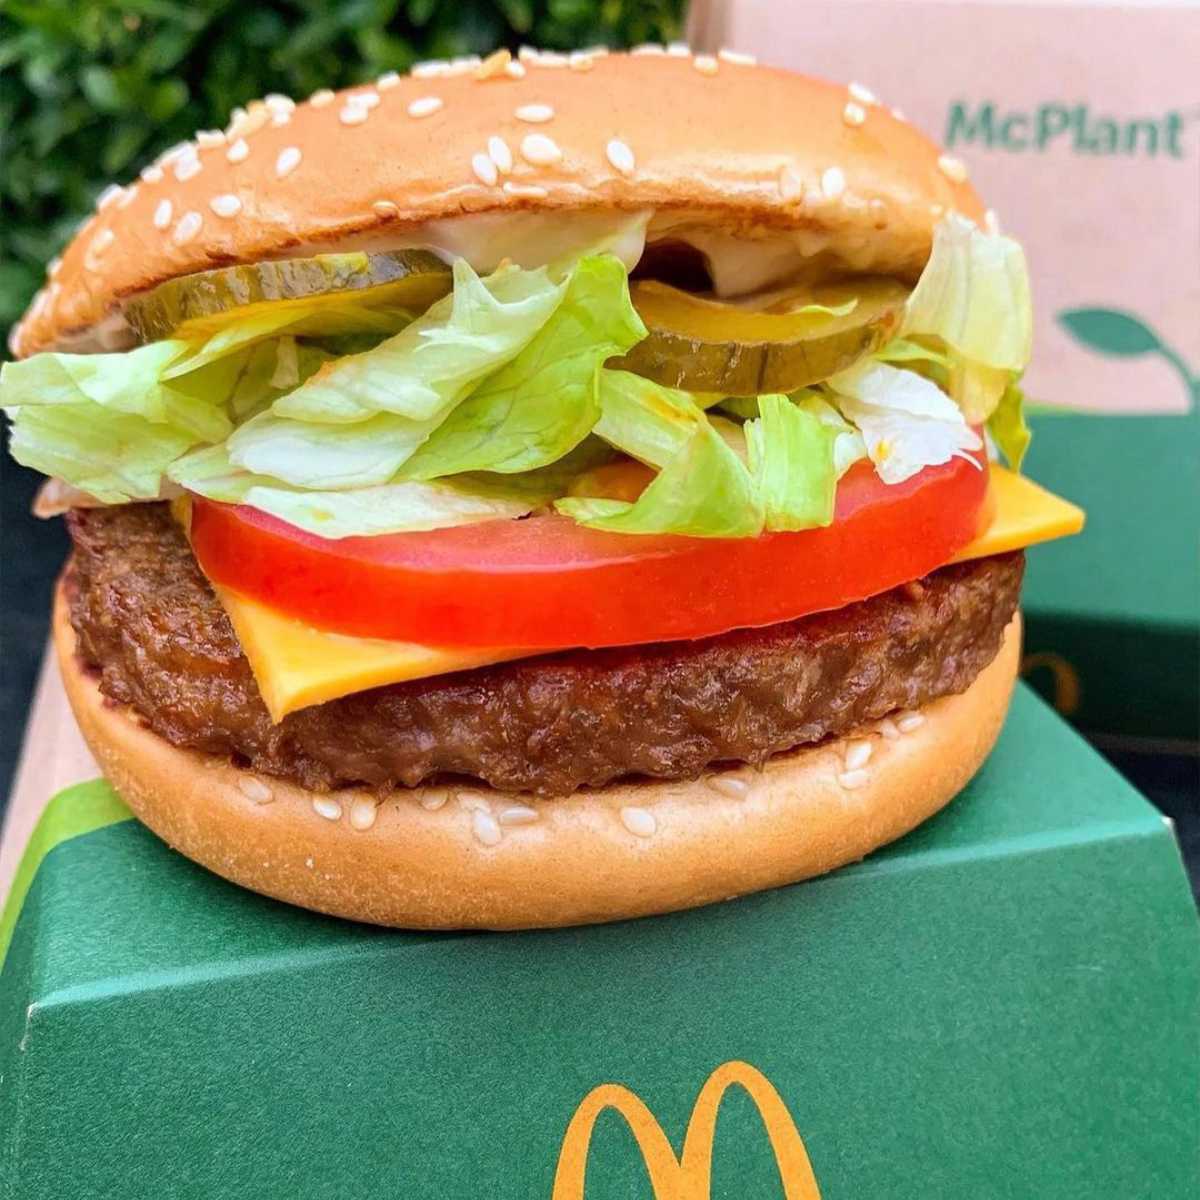 close of the the McDonalds vegan burger